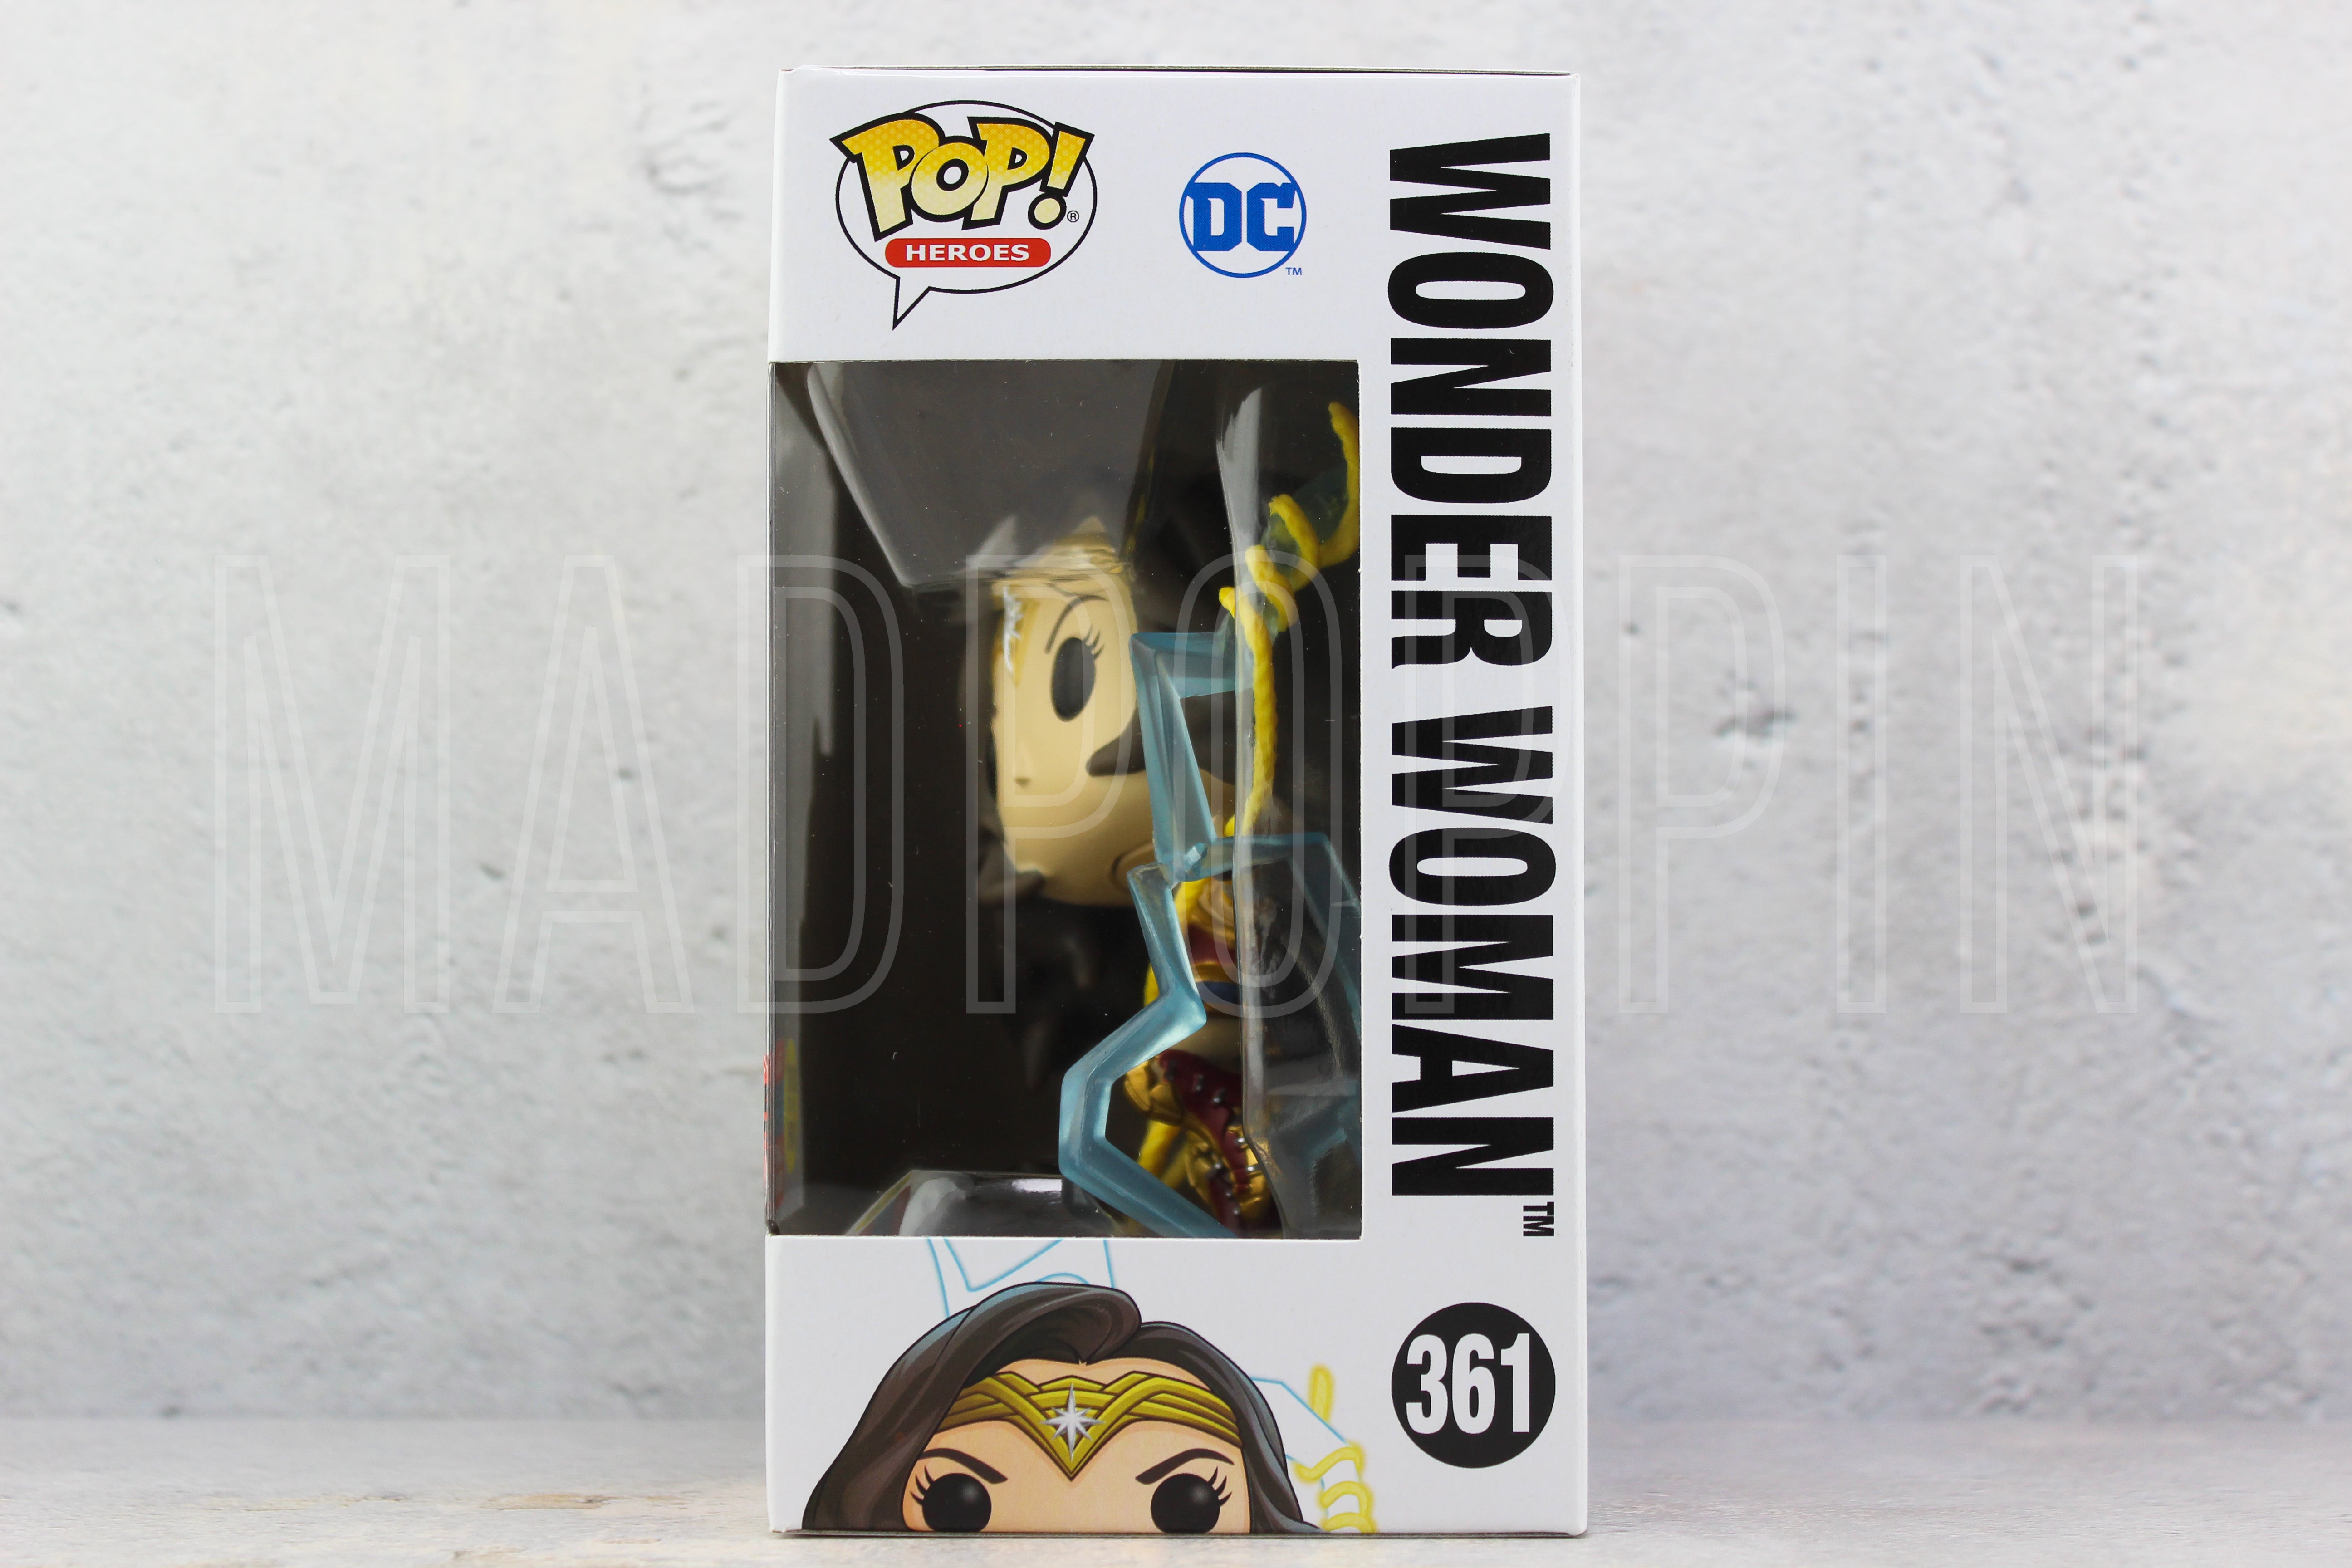 POP! Heroes: WW84: Wonder Woman - Wonder Woman (Glow in the Dark)